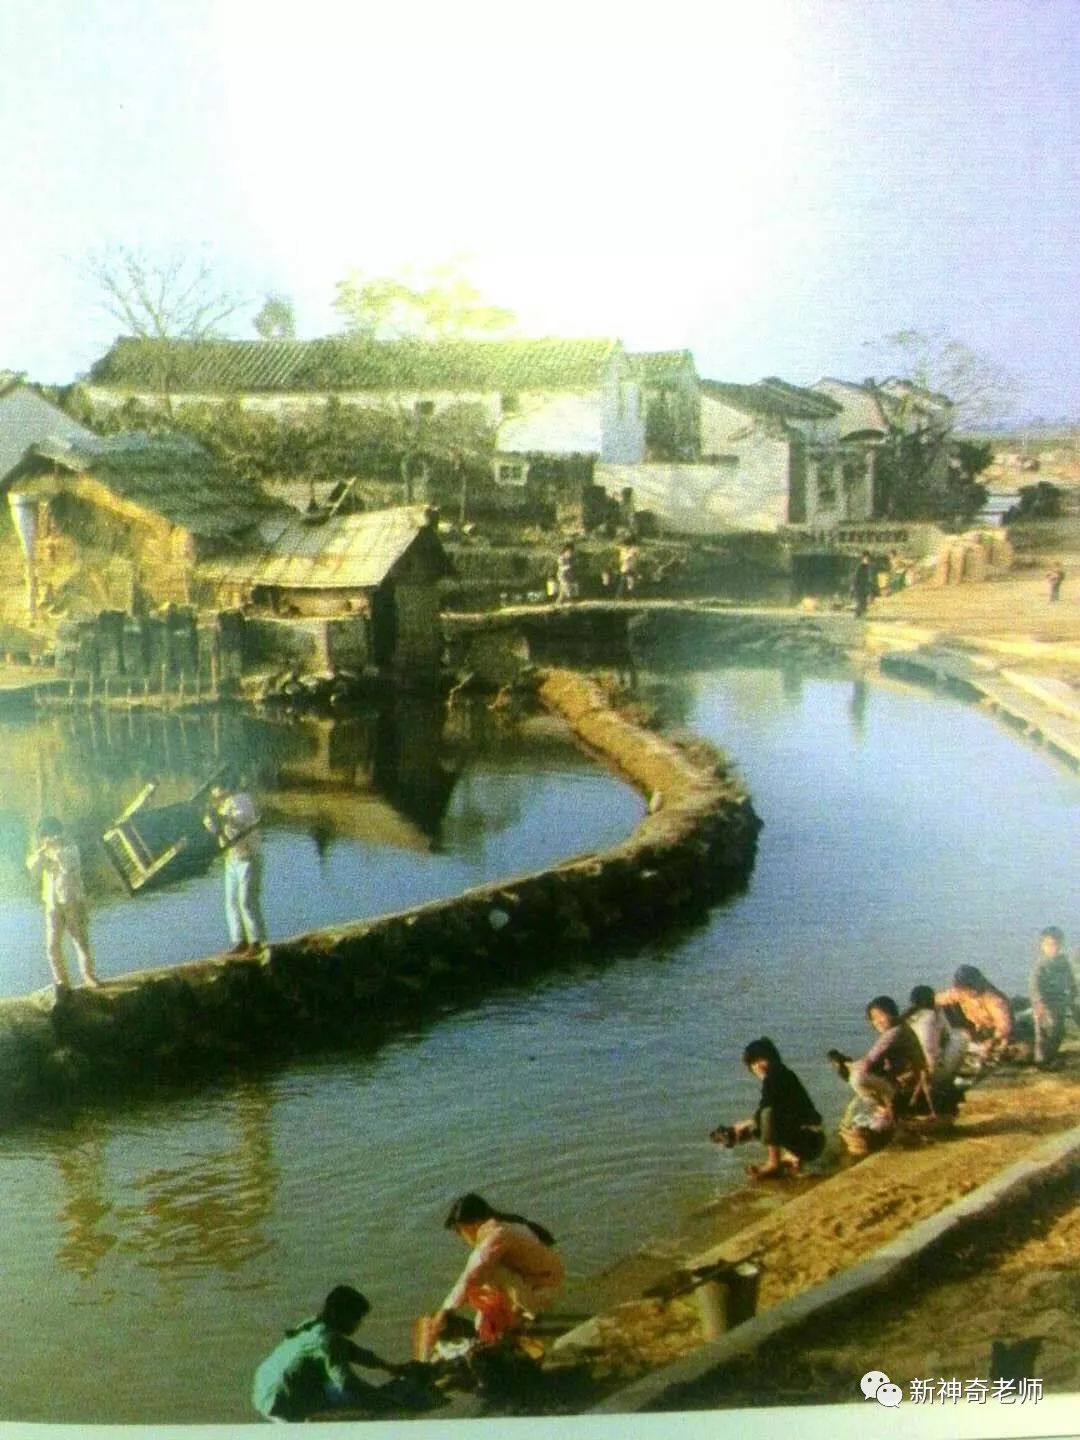 【刷爆】澄海农村生活的怀旧照片,满满7080的回忆!